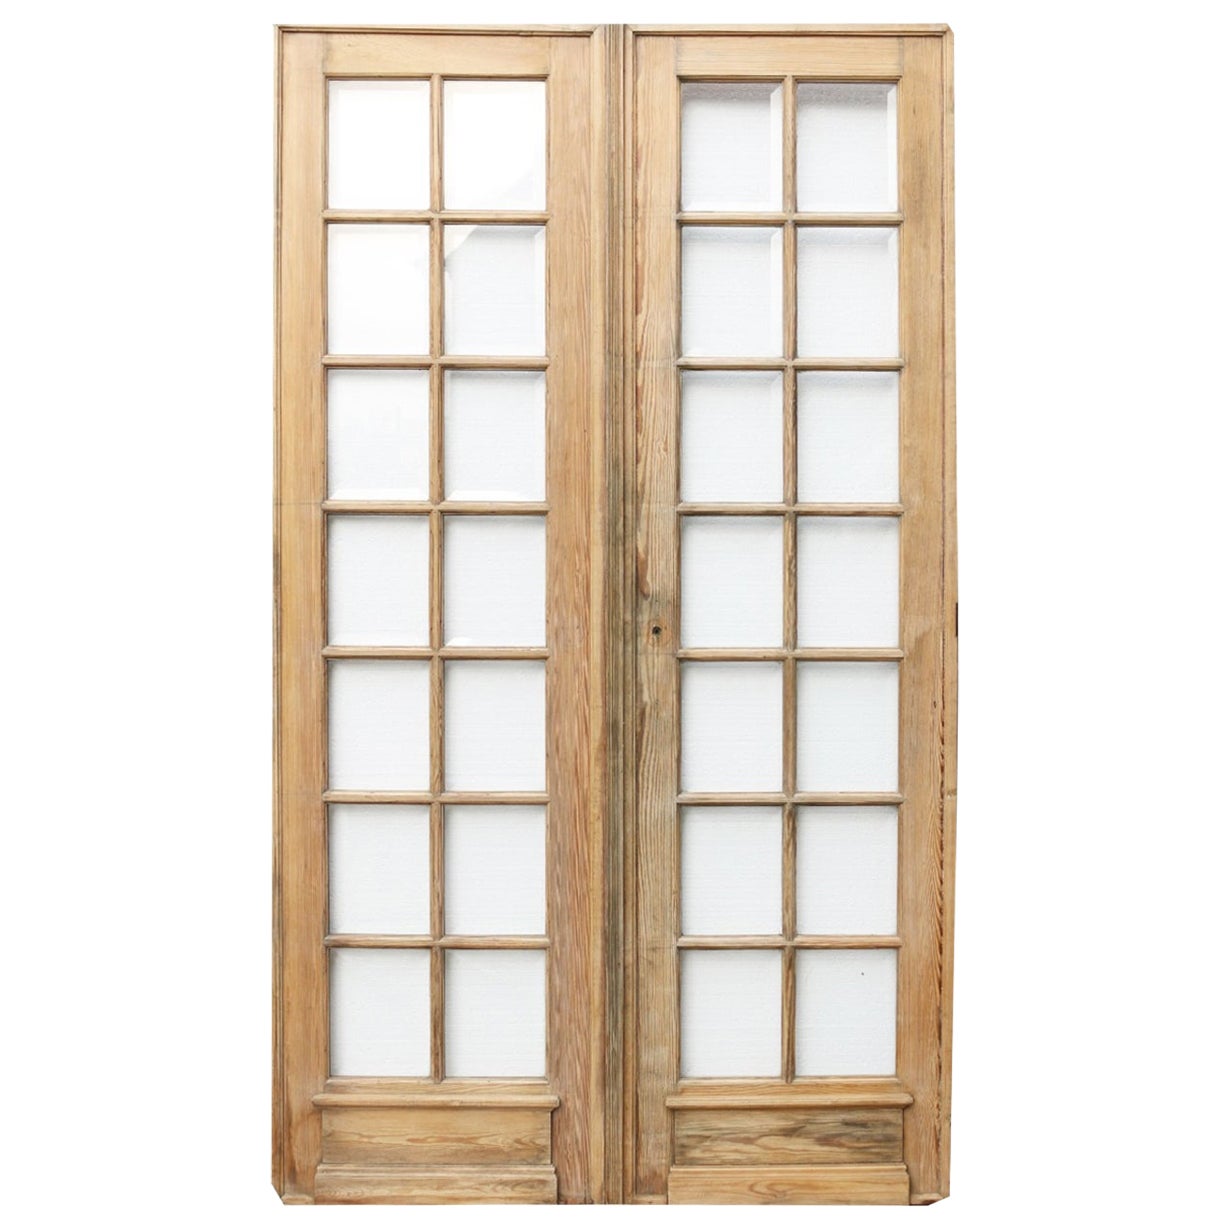 Antique Glazed Pine Double Doors